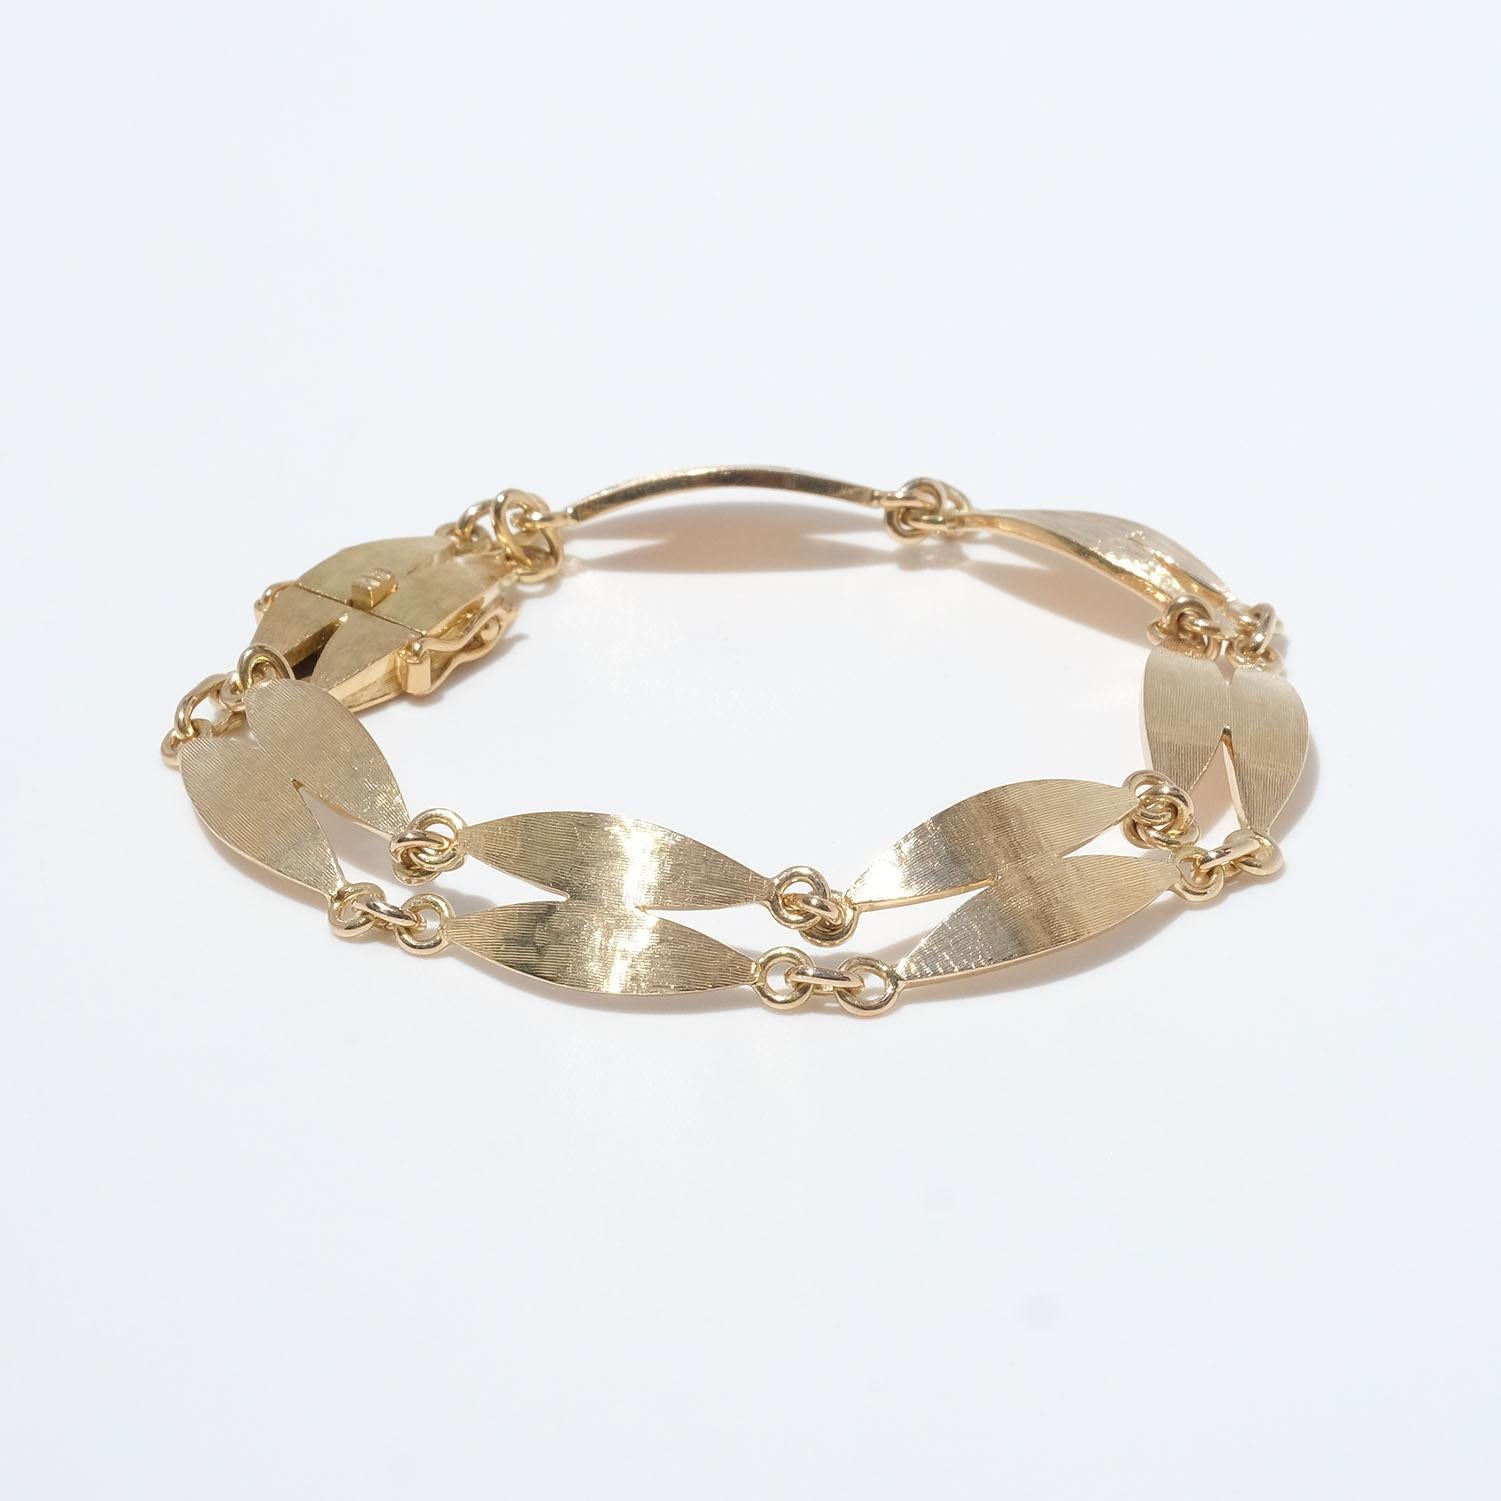 Ce bracelet en or 18 carats est composé de doubles maillons ovales reliés entre eux par de petits anneaux en or. Les maillons ont une surface mate et brossée. Le bracelet se ferme facilement à l'aide d'un fermoir en forme de boîte.

Le bracelet a un